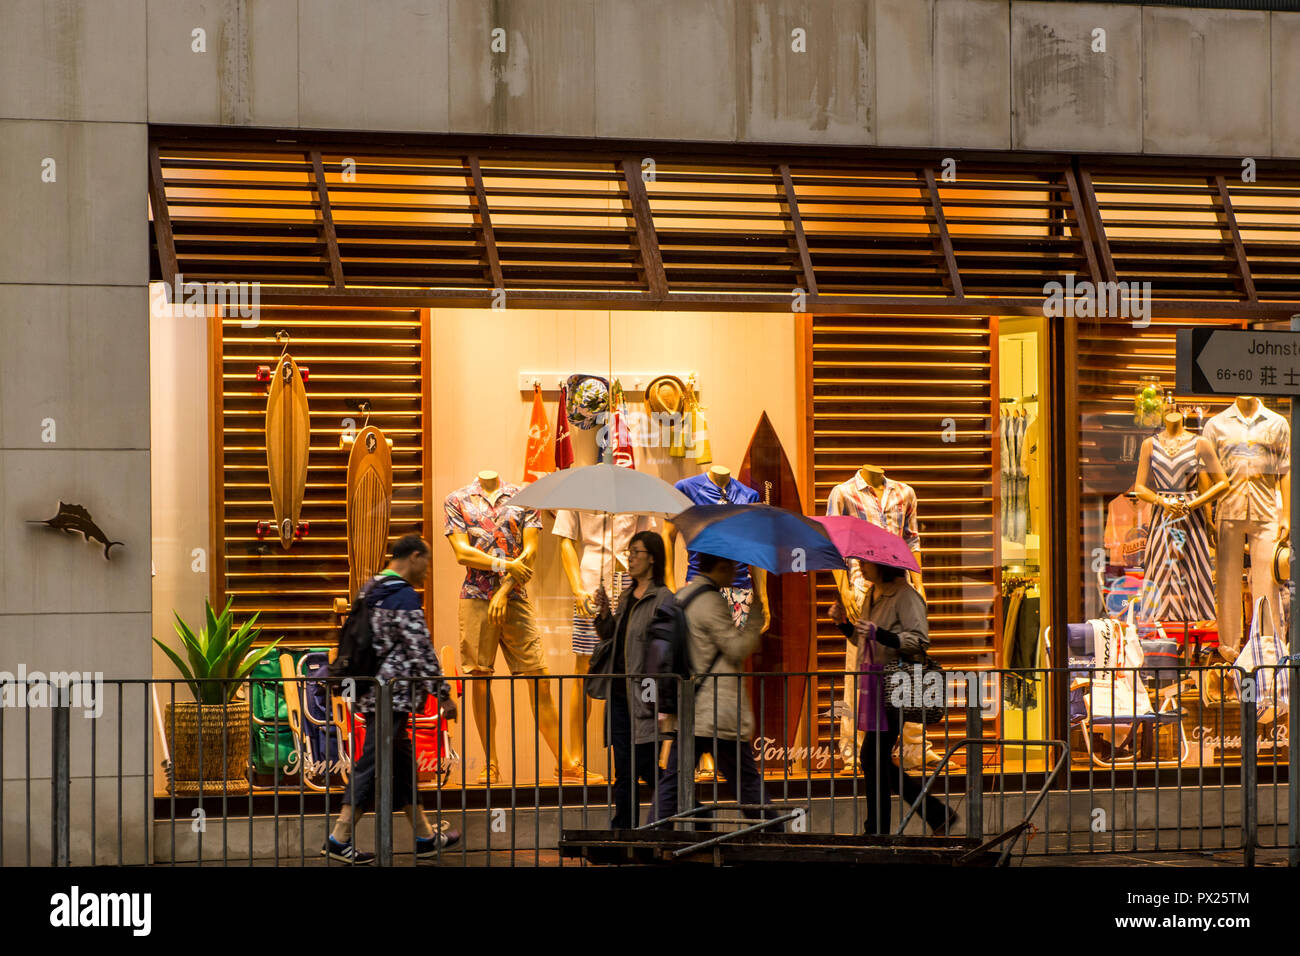 Evening street scenes on Hong Kong Island, Hong Kong, China. Stock Photo